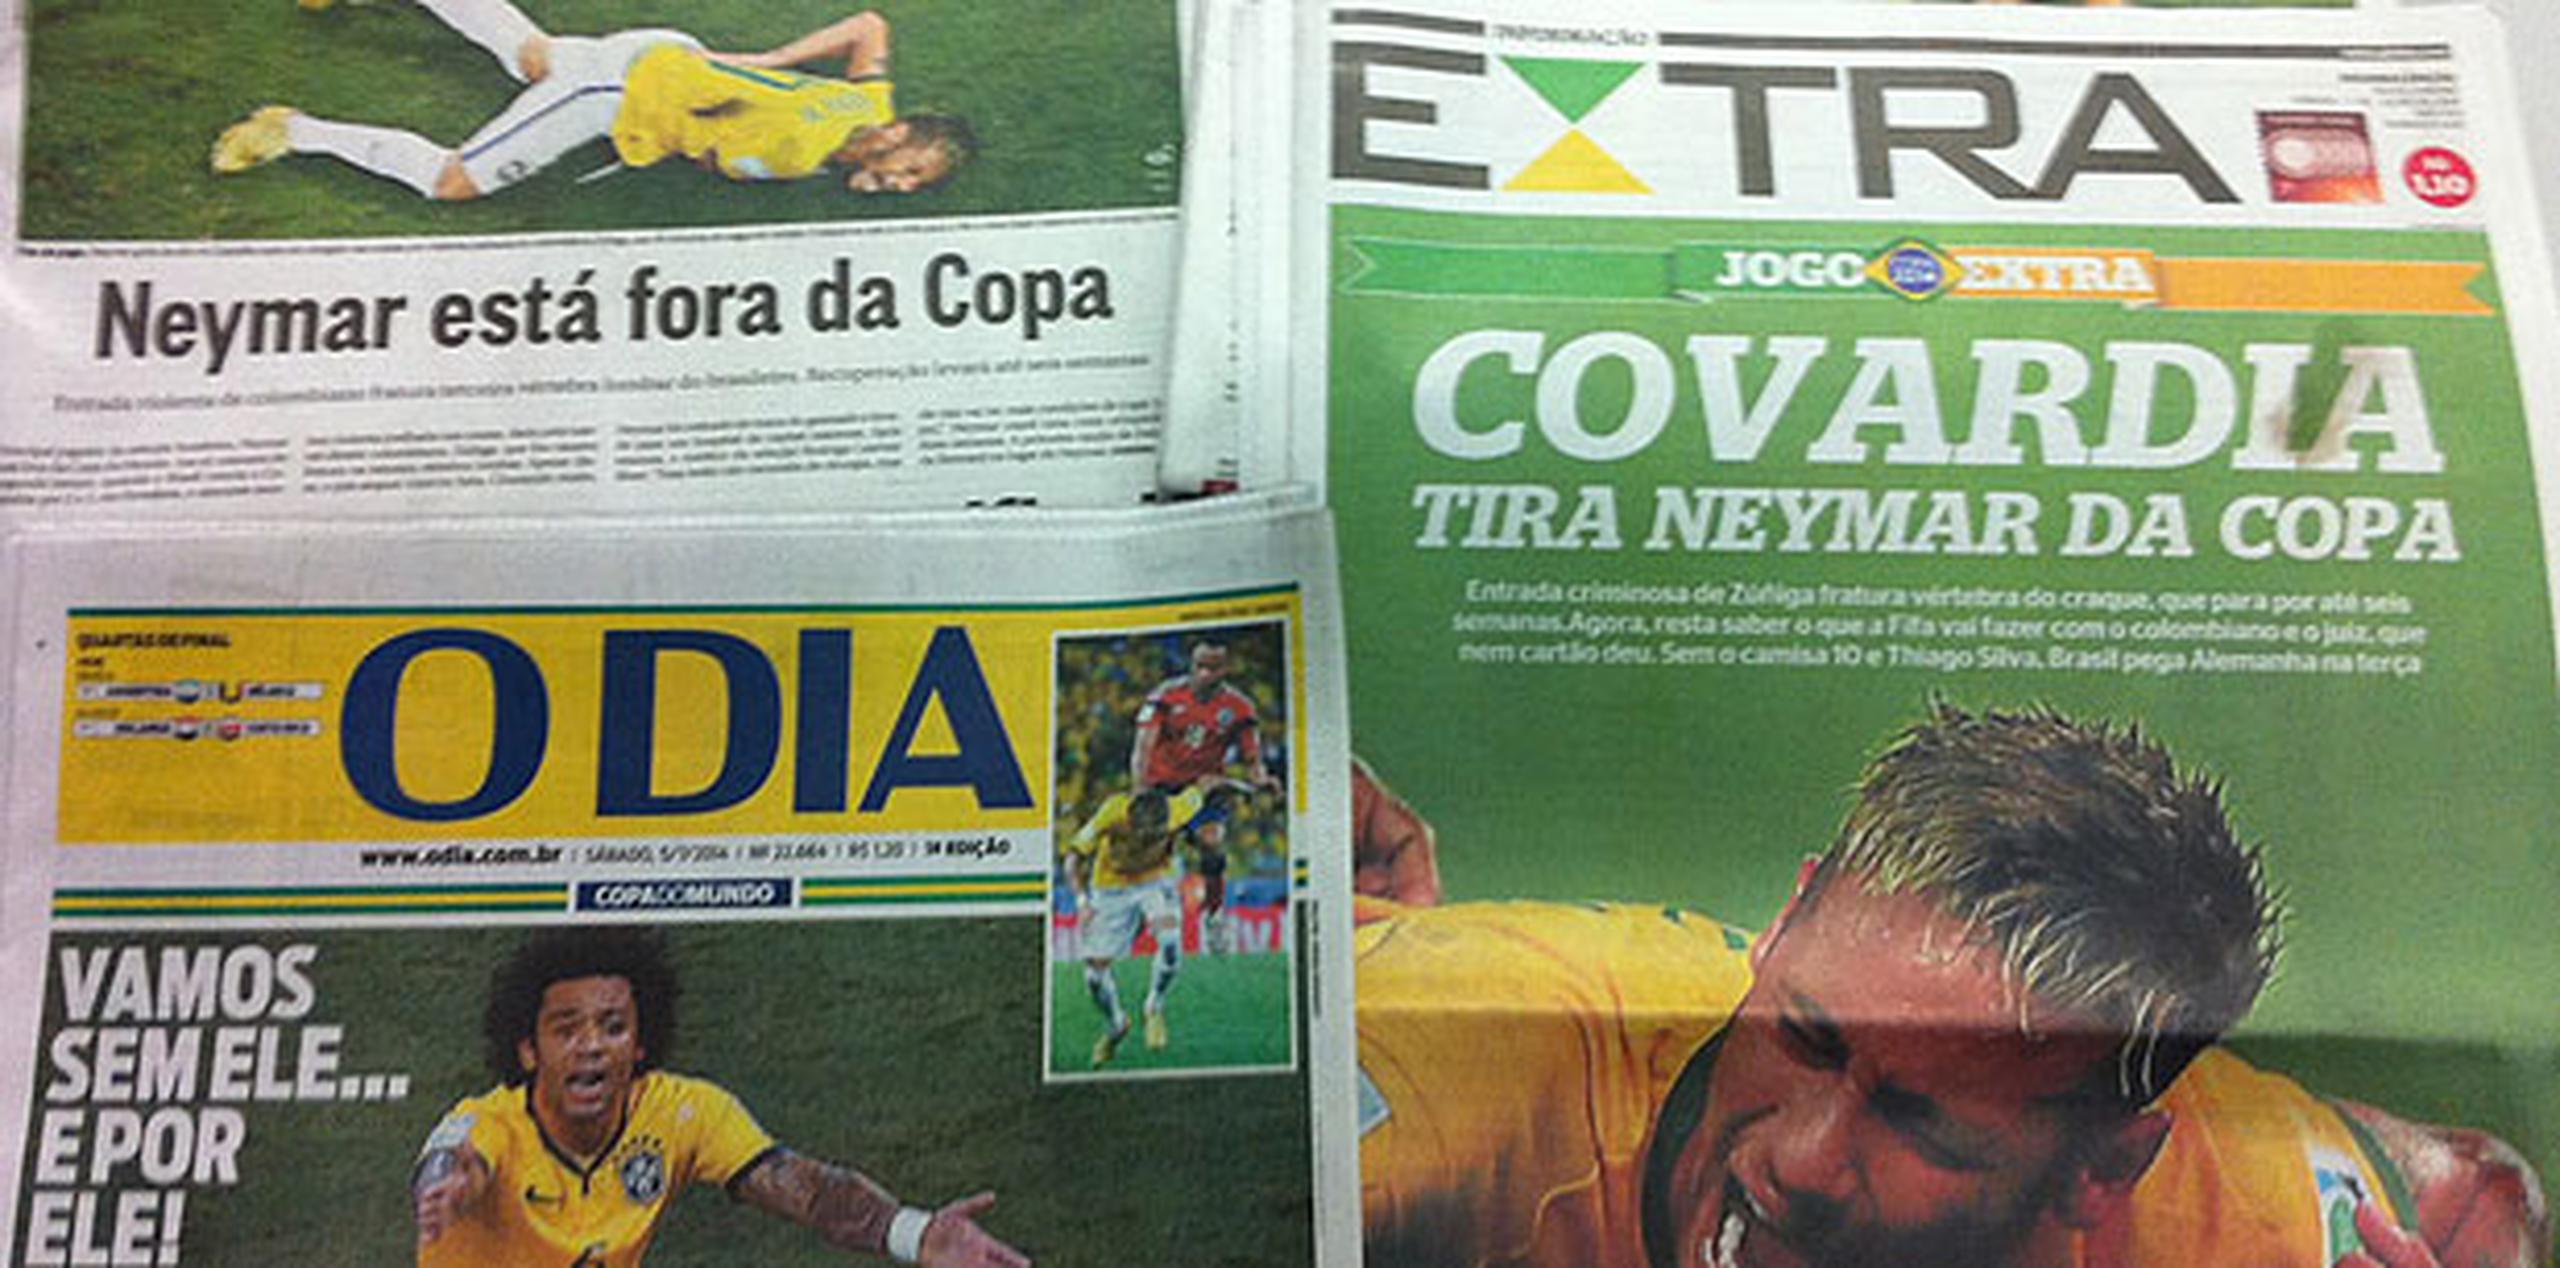 En las portadas de los periódicos también presentan fotos de Neymar en dolor. “Cobardía deja fuera a Neymar de la Copa”, lee la portada del diario Extra. (esteban.pagan@gfrmedia.com)